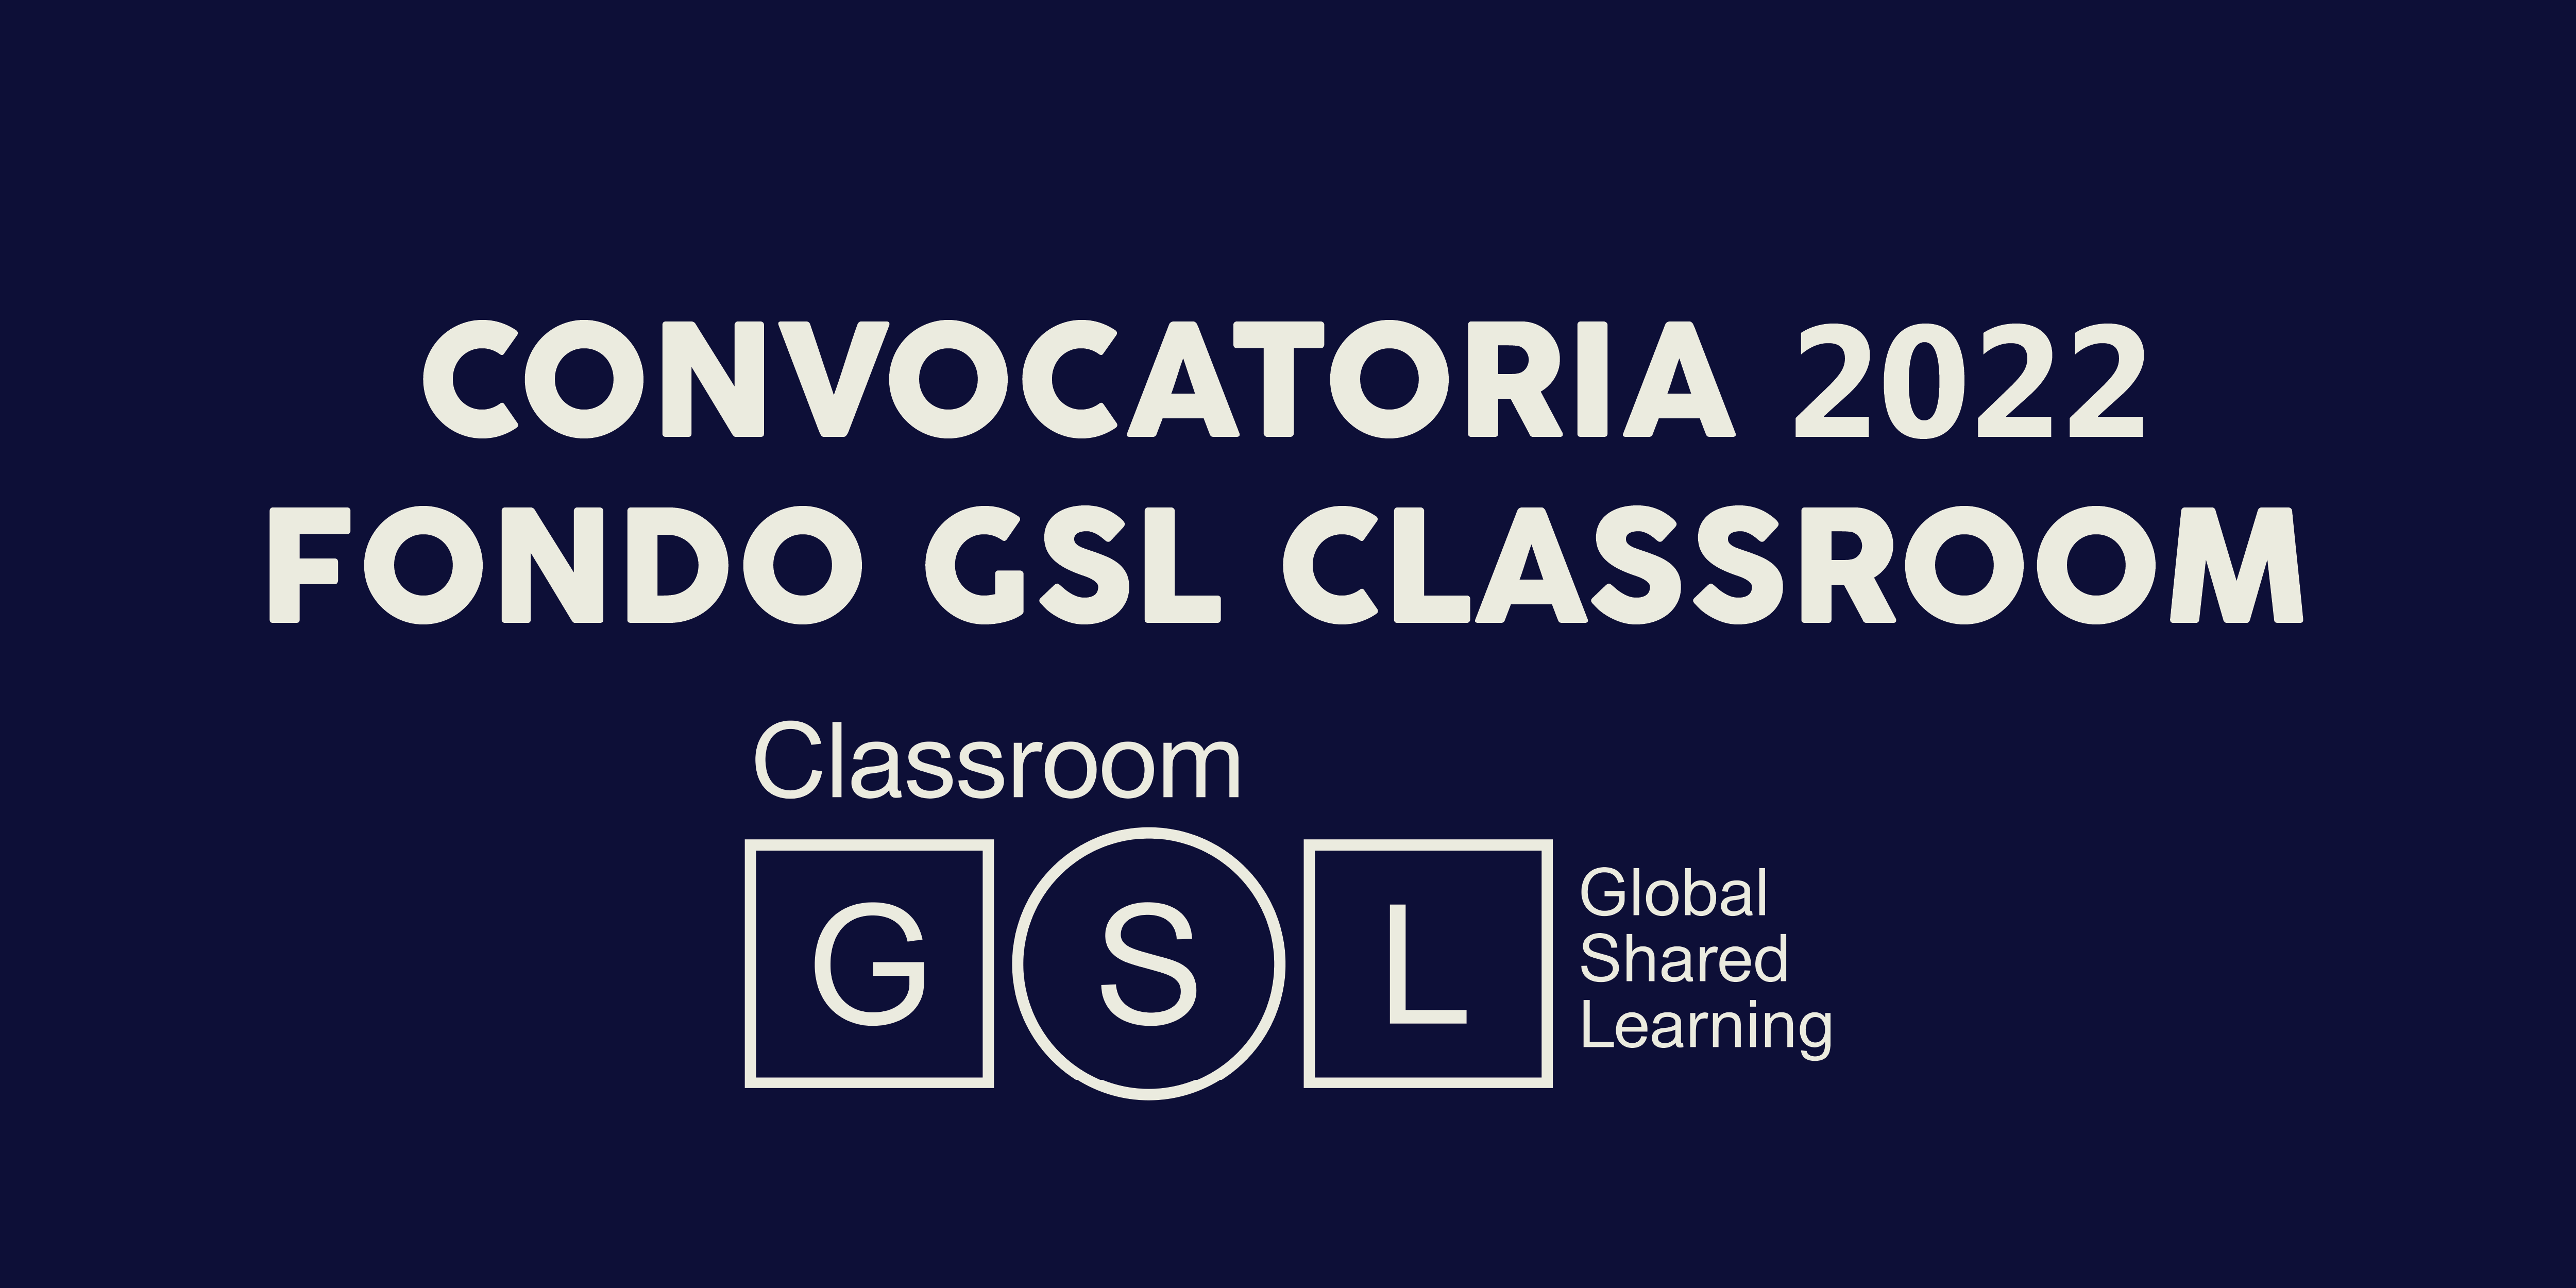 Fondo GSL Classroom